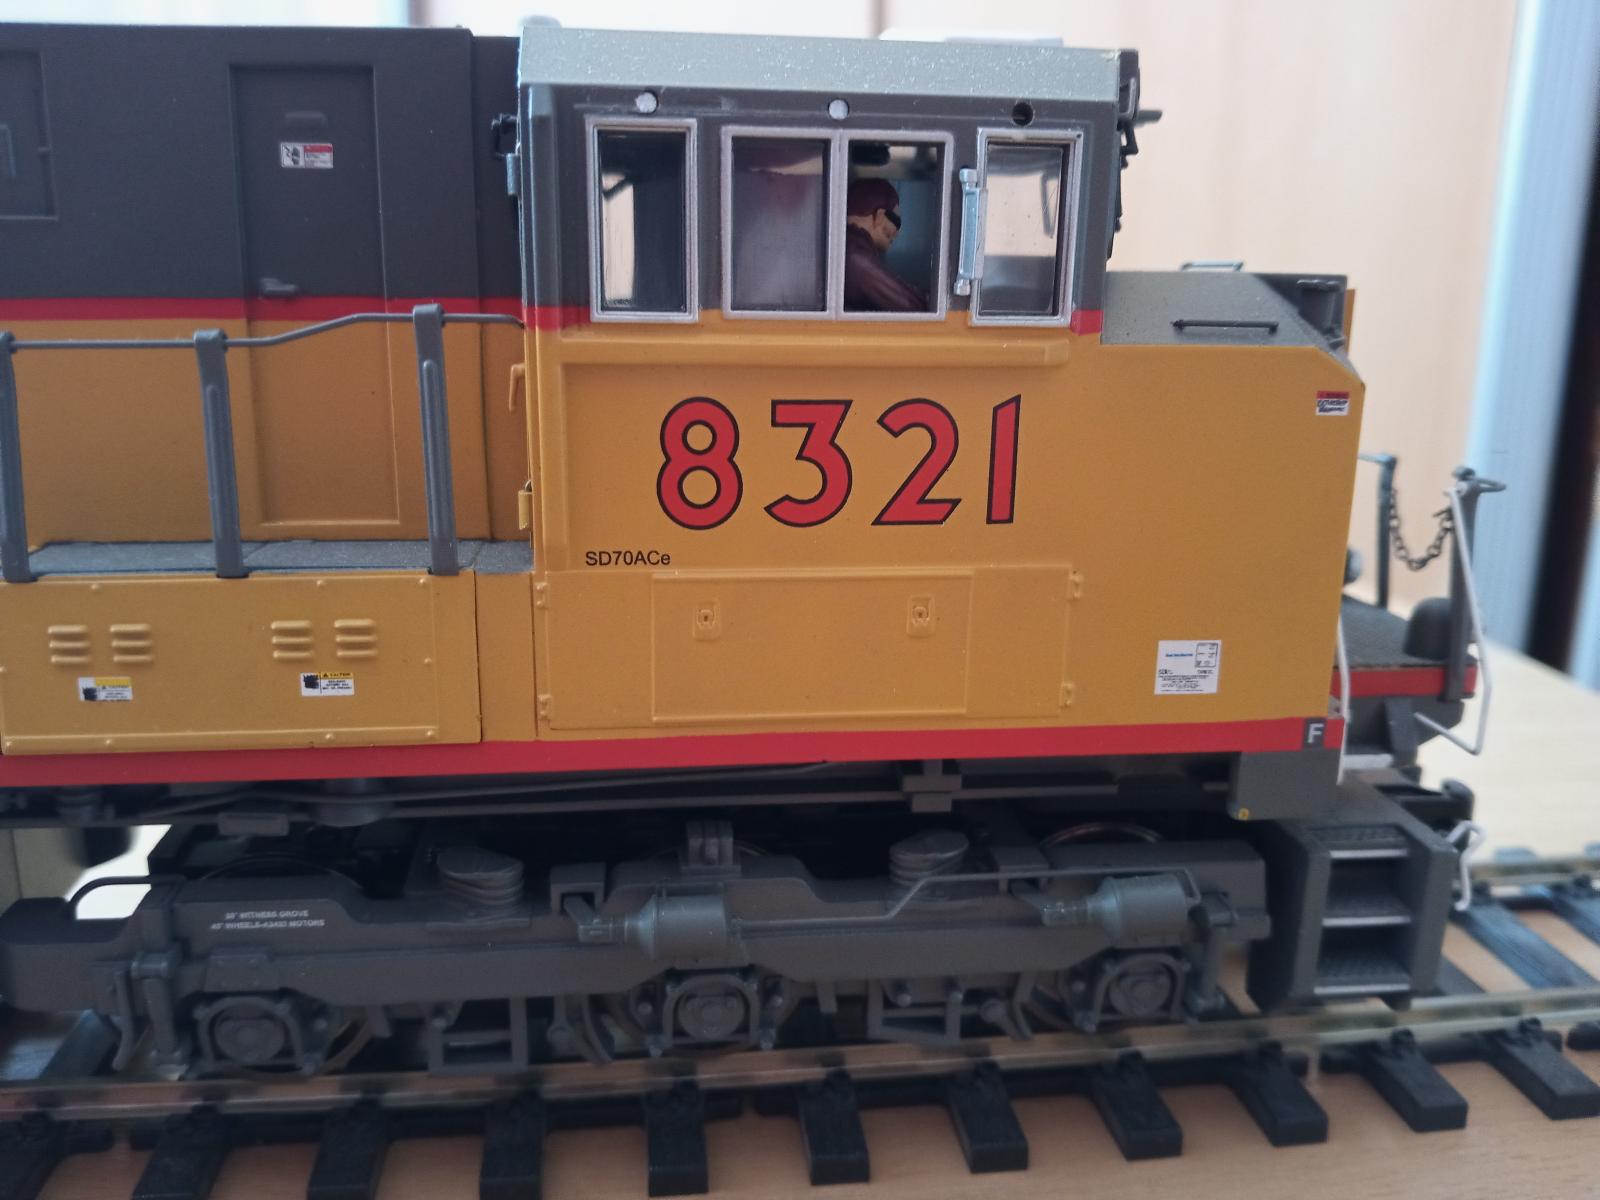 Mašina mth Union Pacific velikost 0  1:45 - Modelová železnice